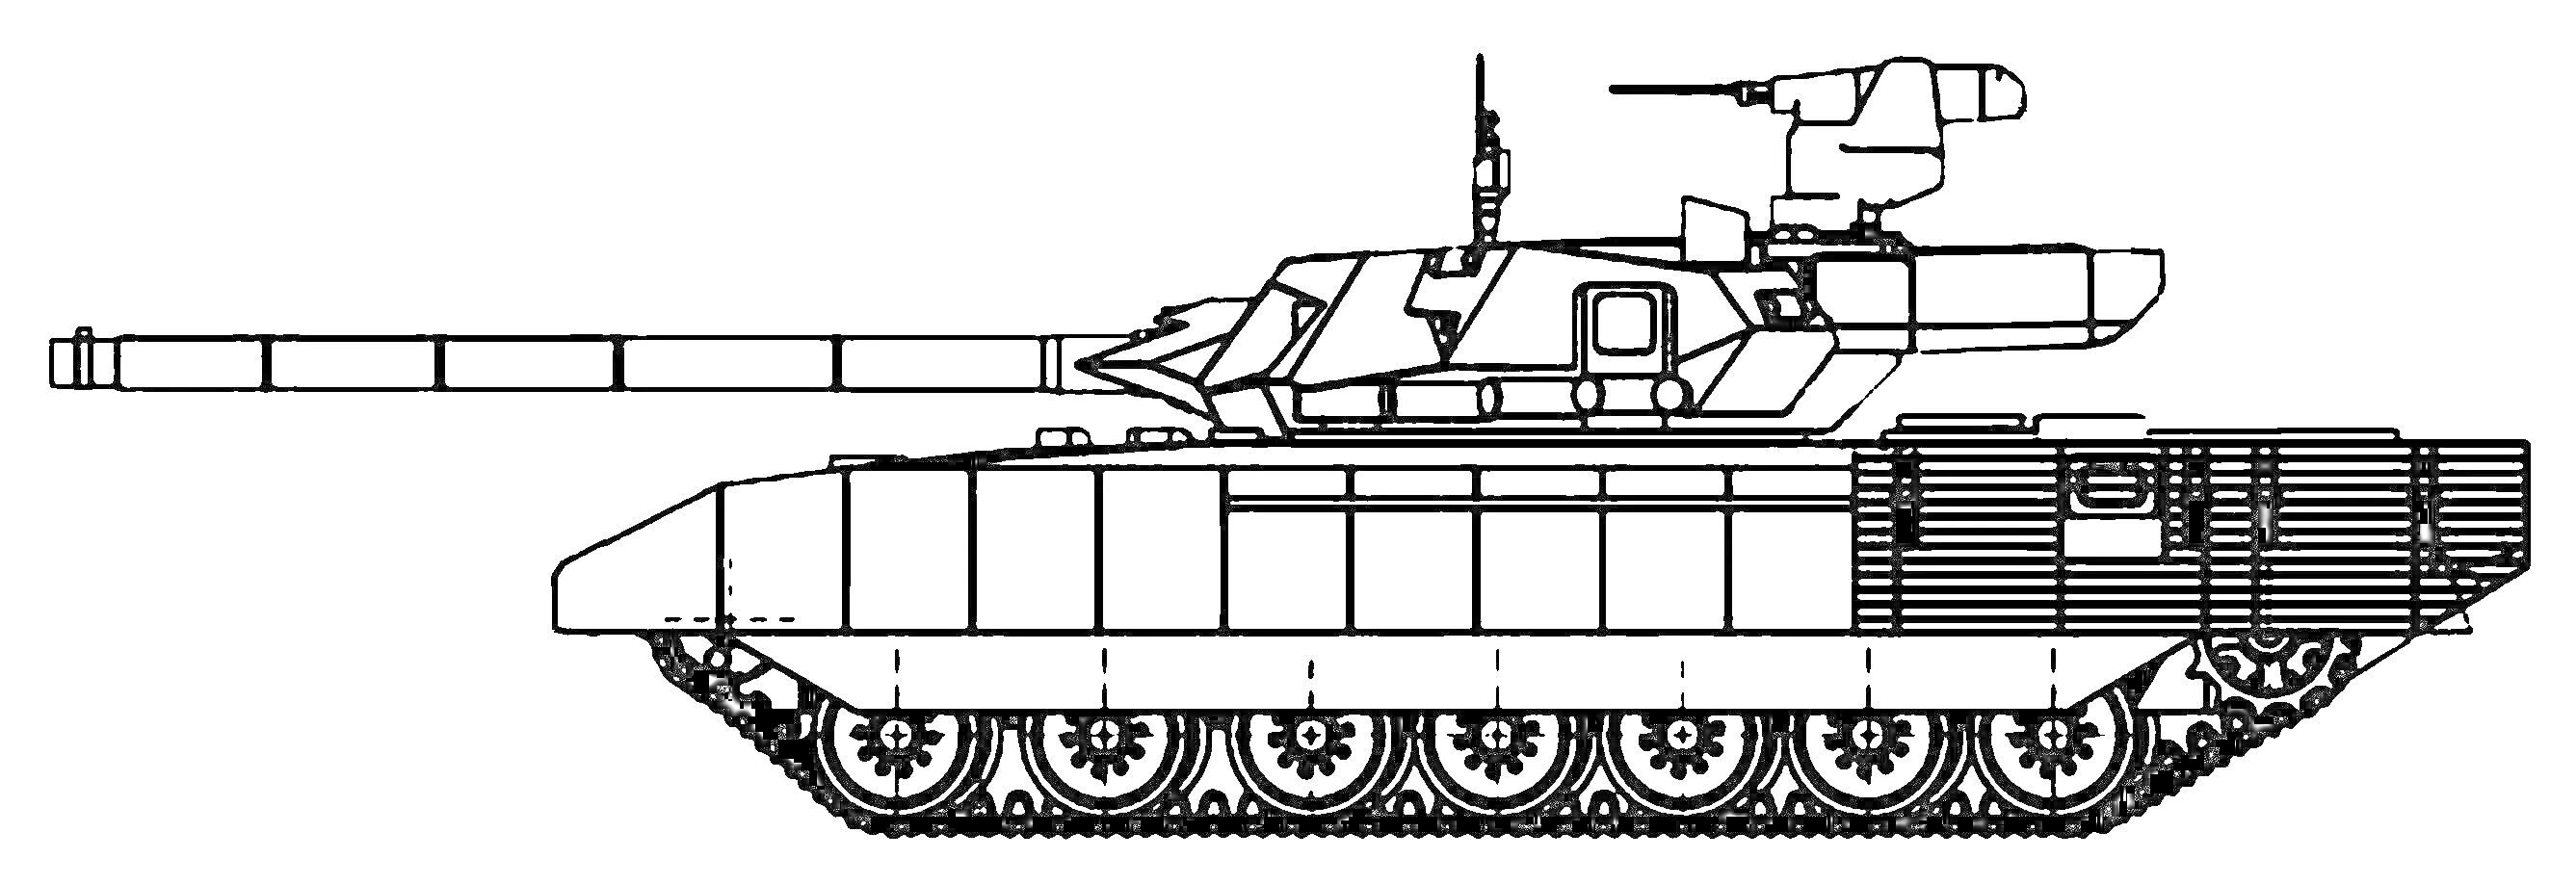 Раскраска Танковая раскраска Т-14 Армата с платьем и башней, боковая проекция, линейное черно-белое изображение